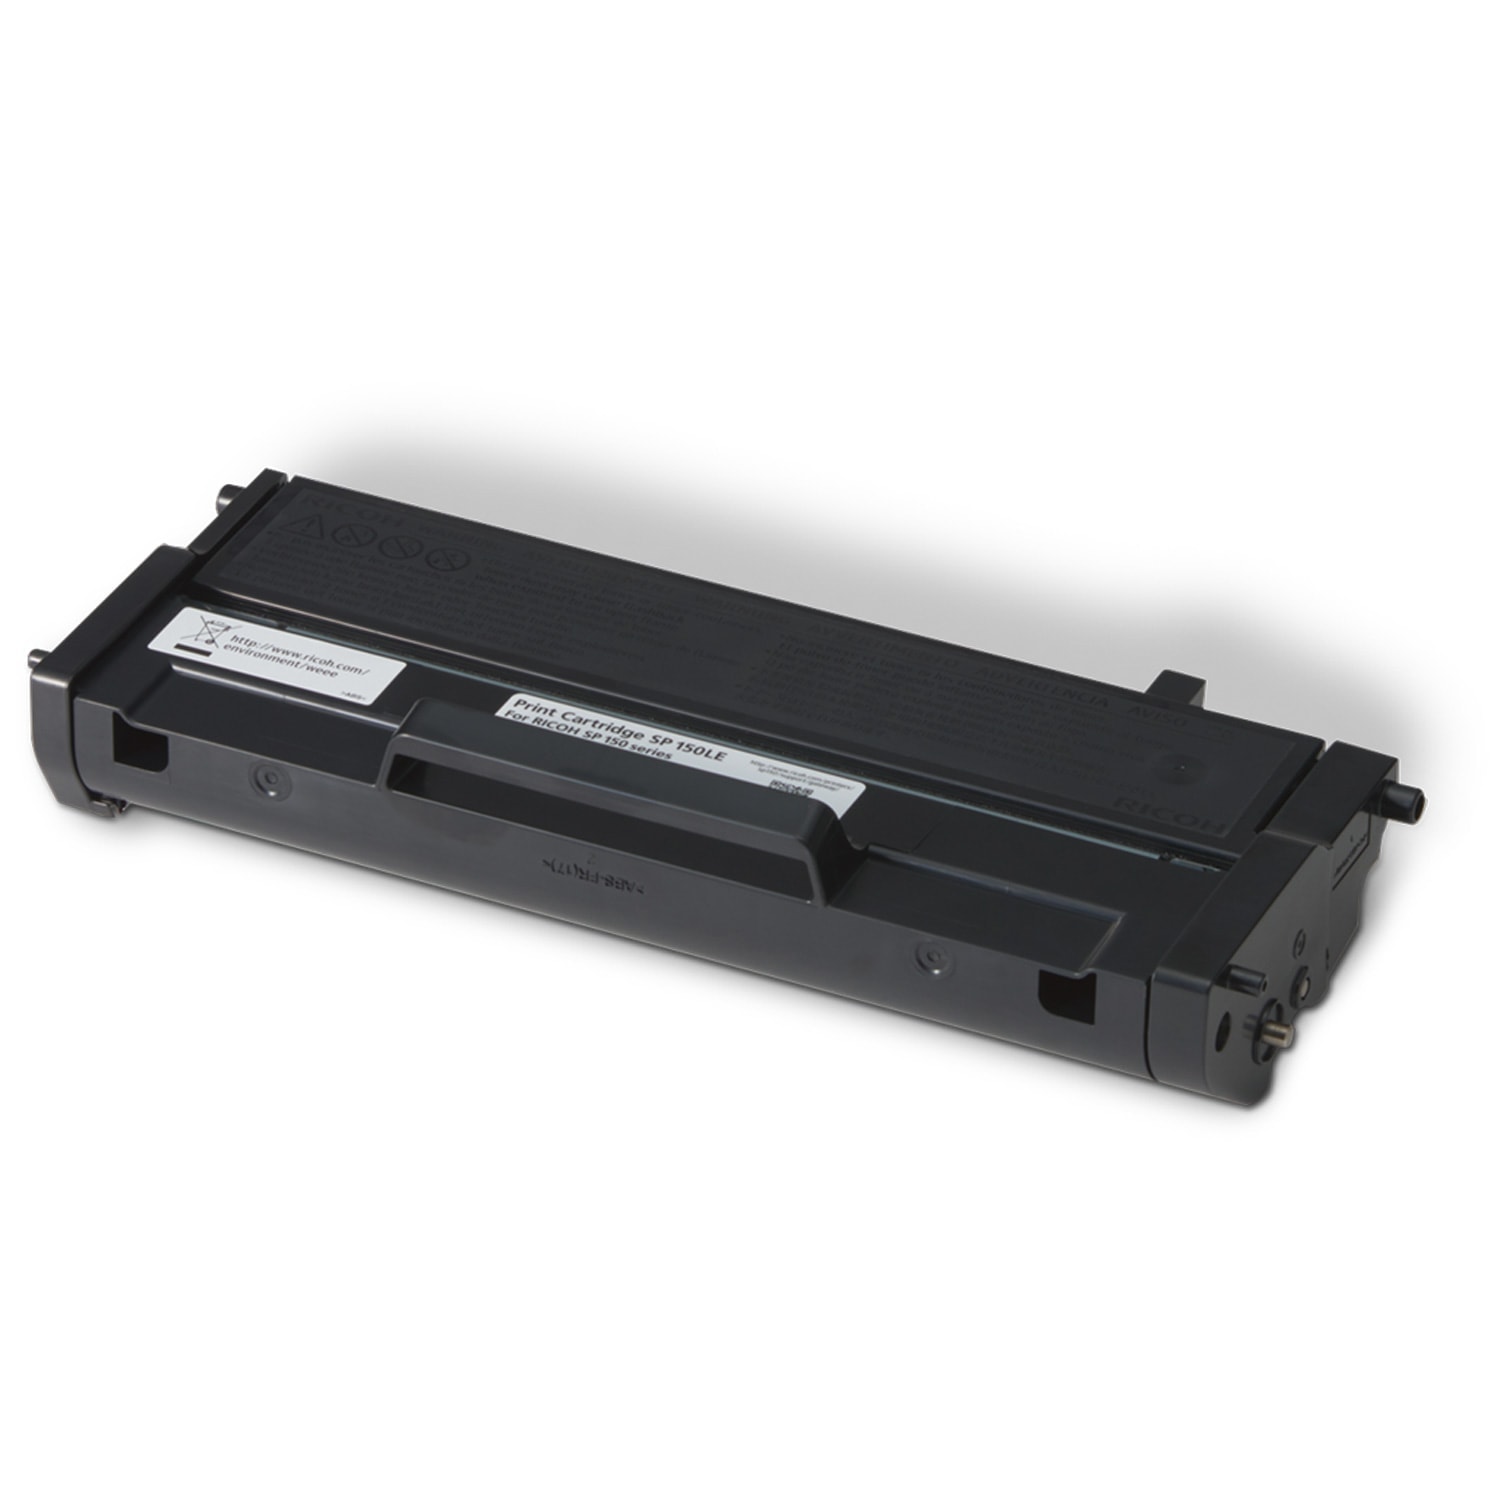 Toner Noir 1500 pages - SP 150HE pour imprimante Laser Ricoh - 0